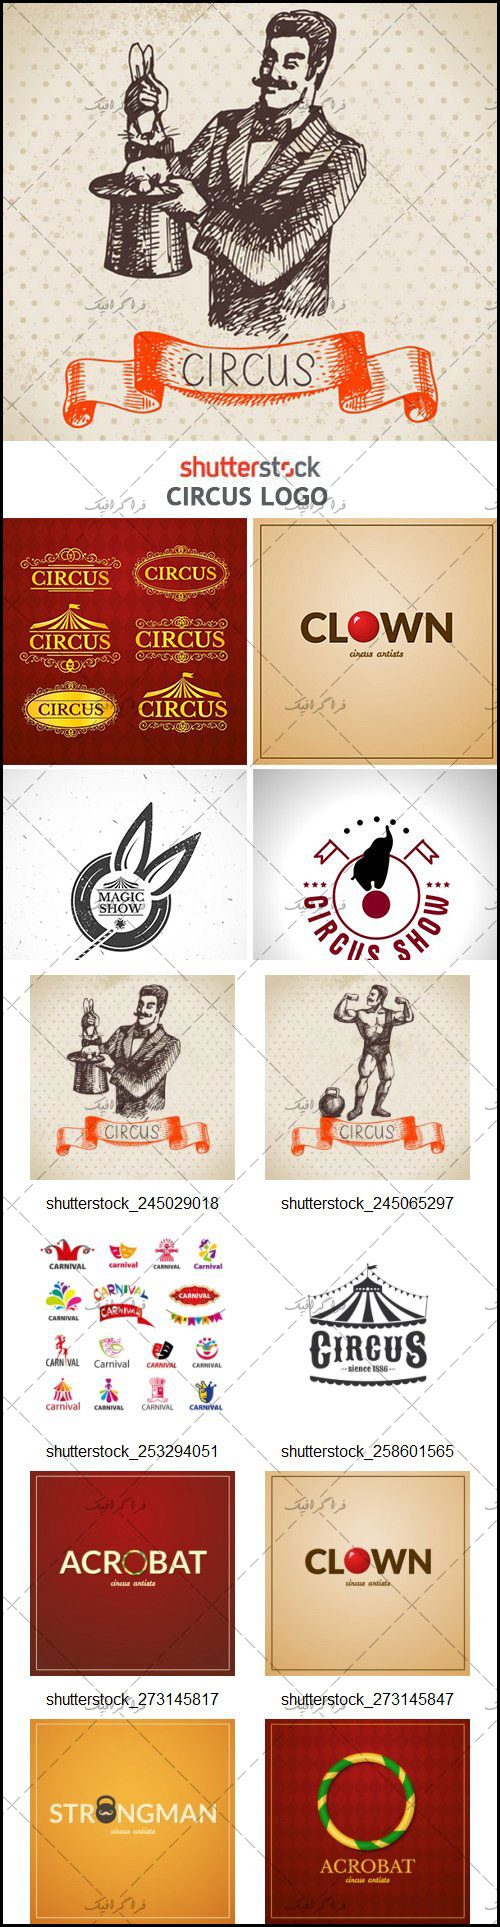 دانلود لوگو های سیرک - Circus Logos